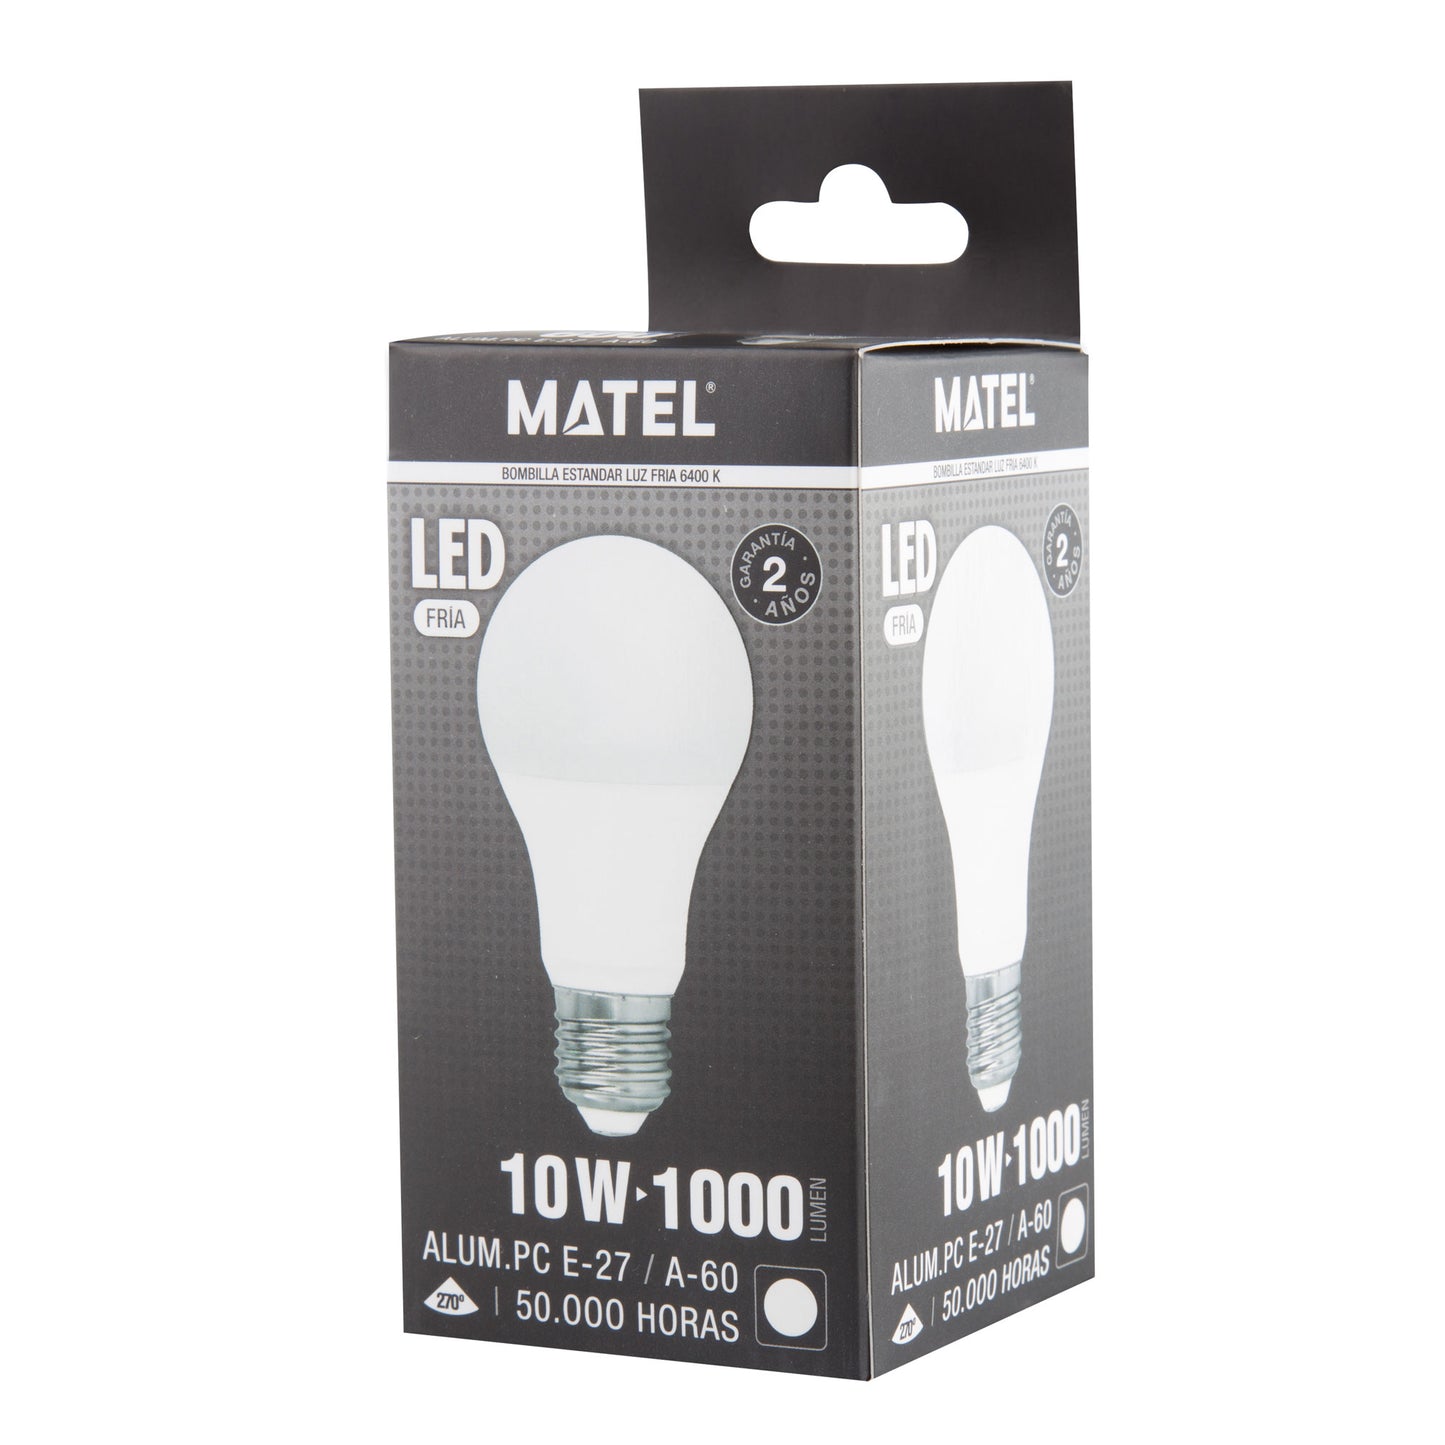 LAMPE LED NORMALE E27 270º A60 A120 4W-30W ATE 100LM/W 230V AC 